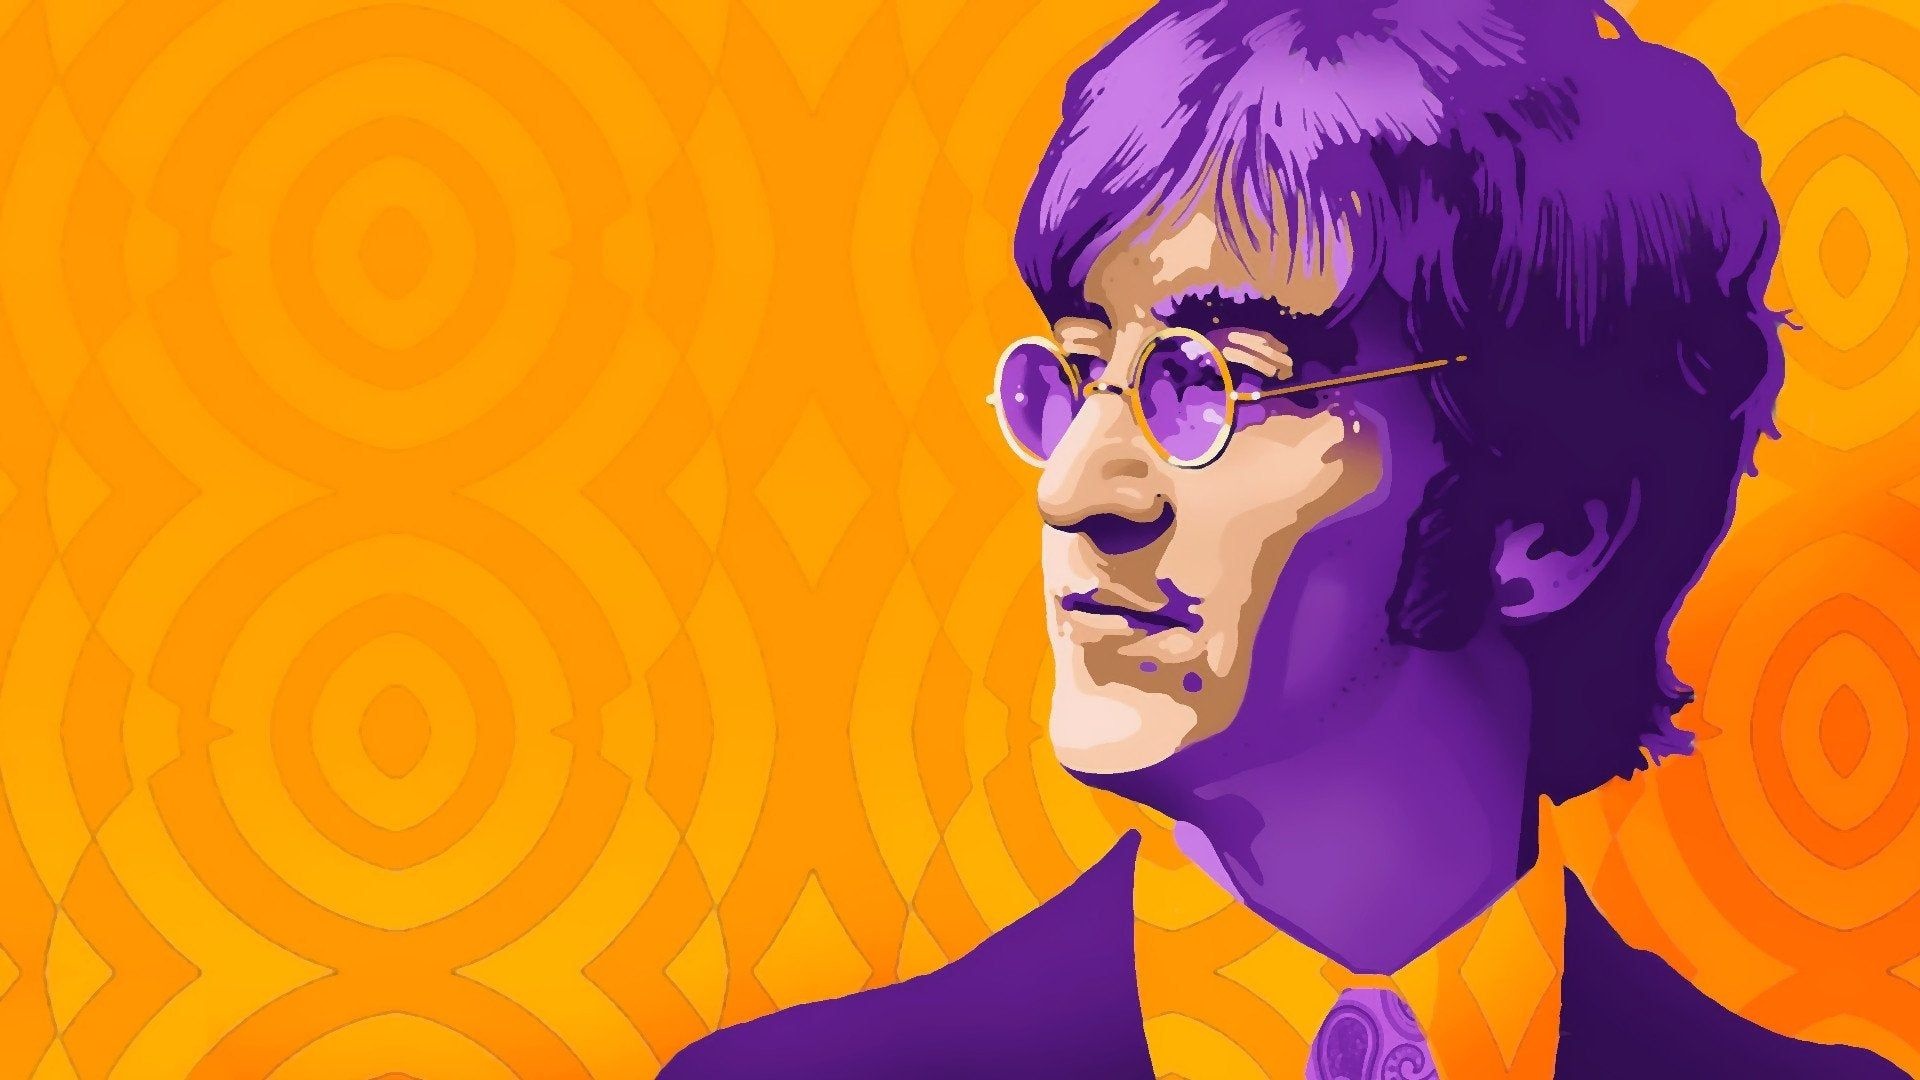 John Lennon, Popular wallpapers, Timeless backgrounds, Music icon, 1920x1080 Full HD Desktop